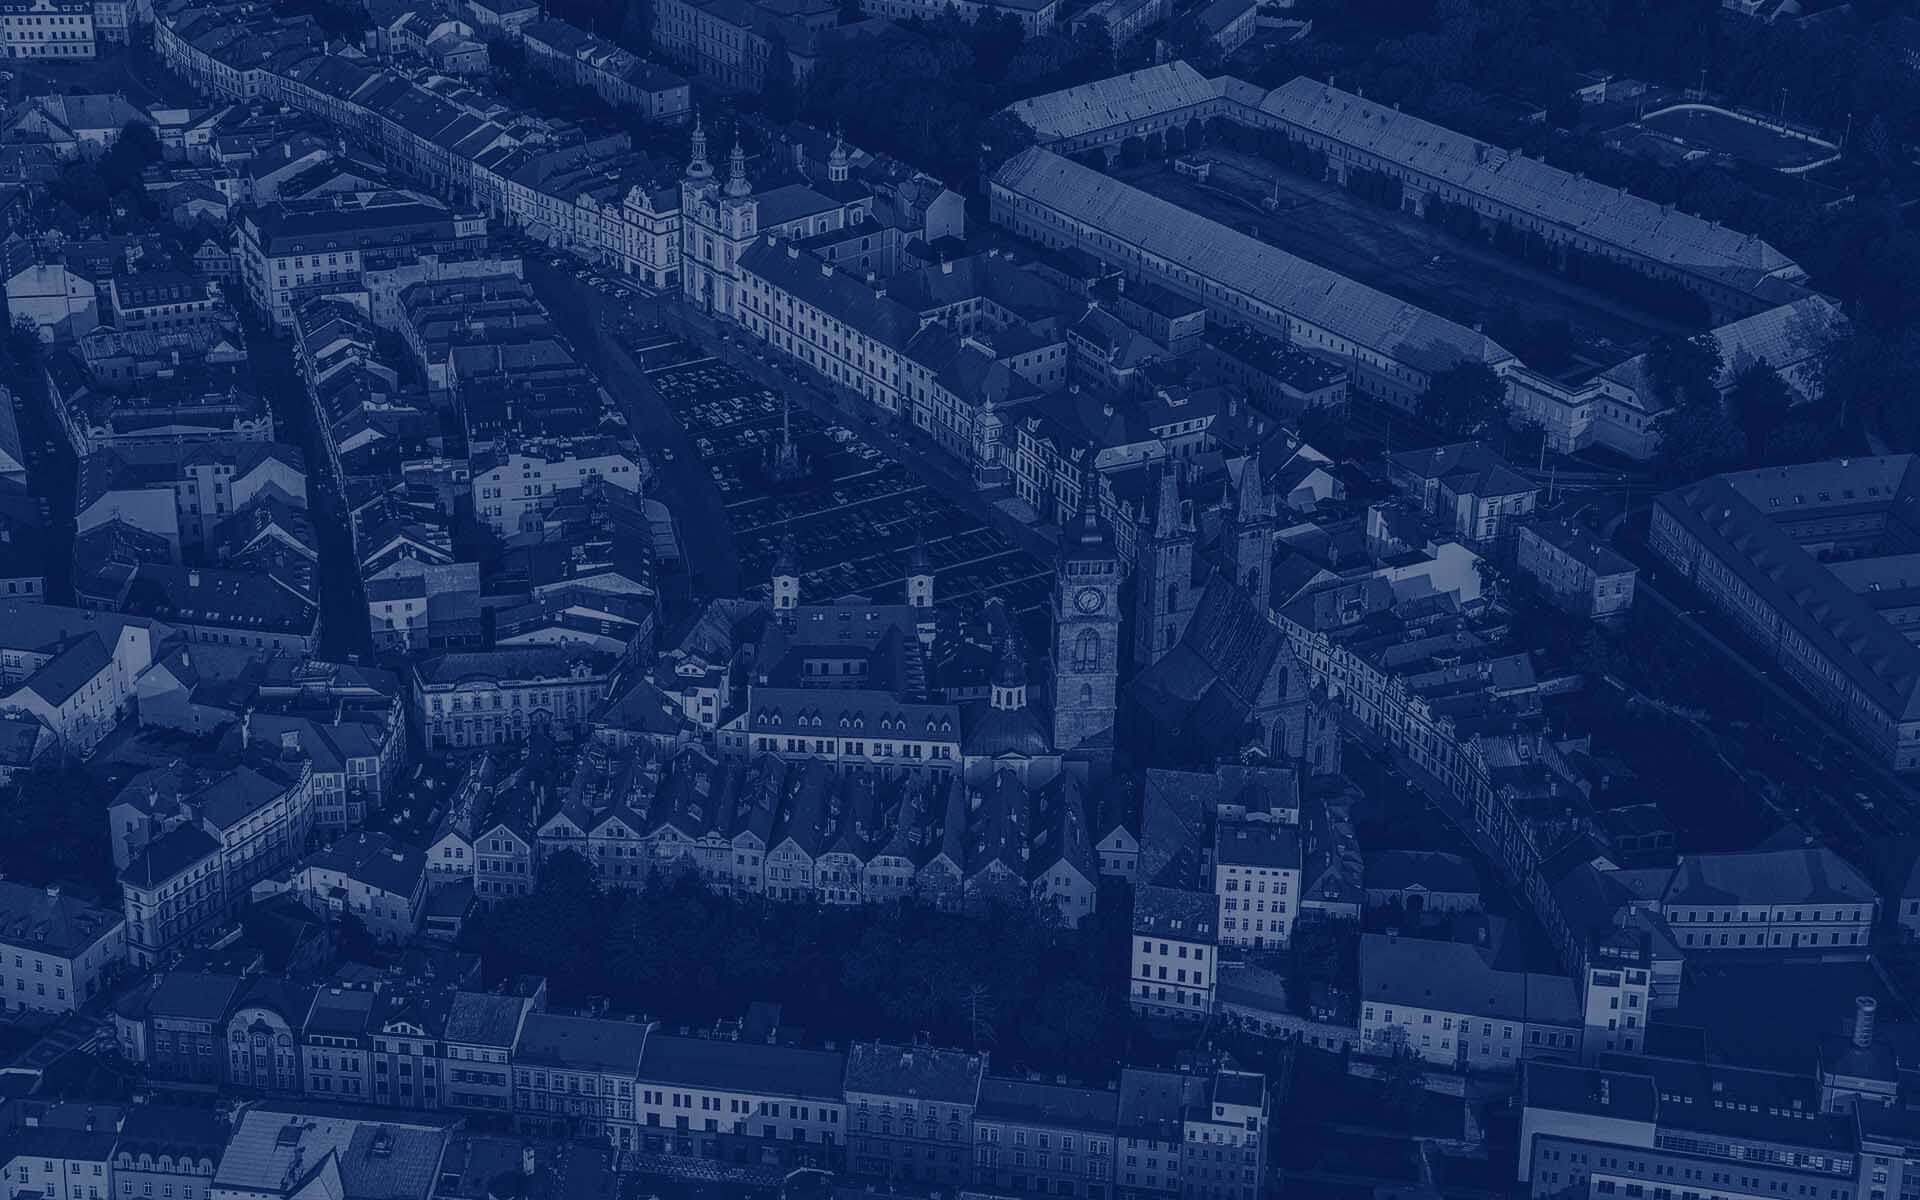 úvodní fotka – letecký pohled na náměstí